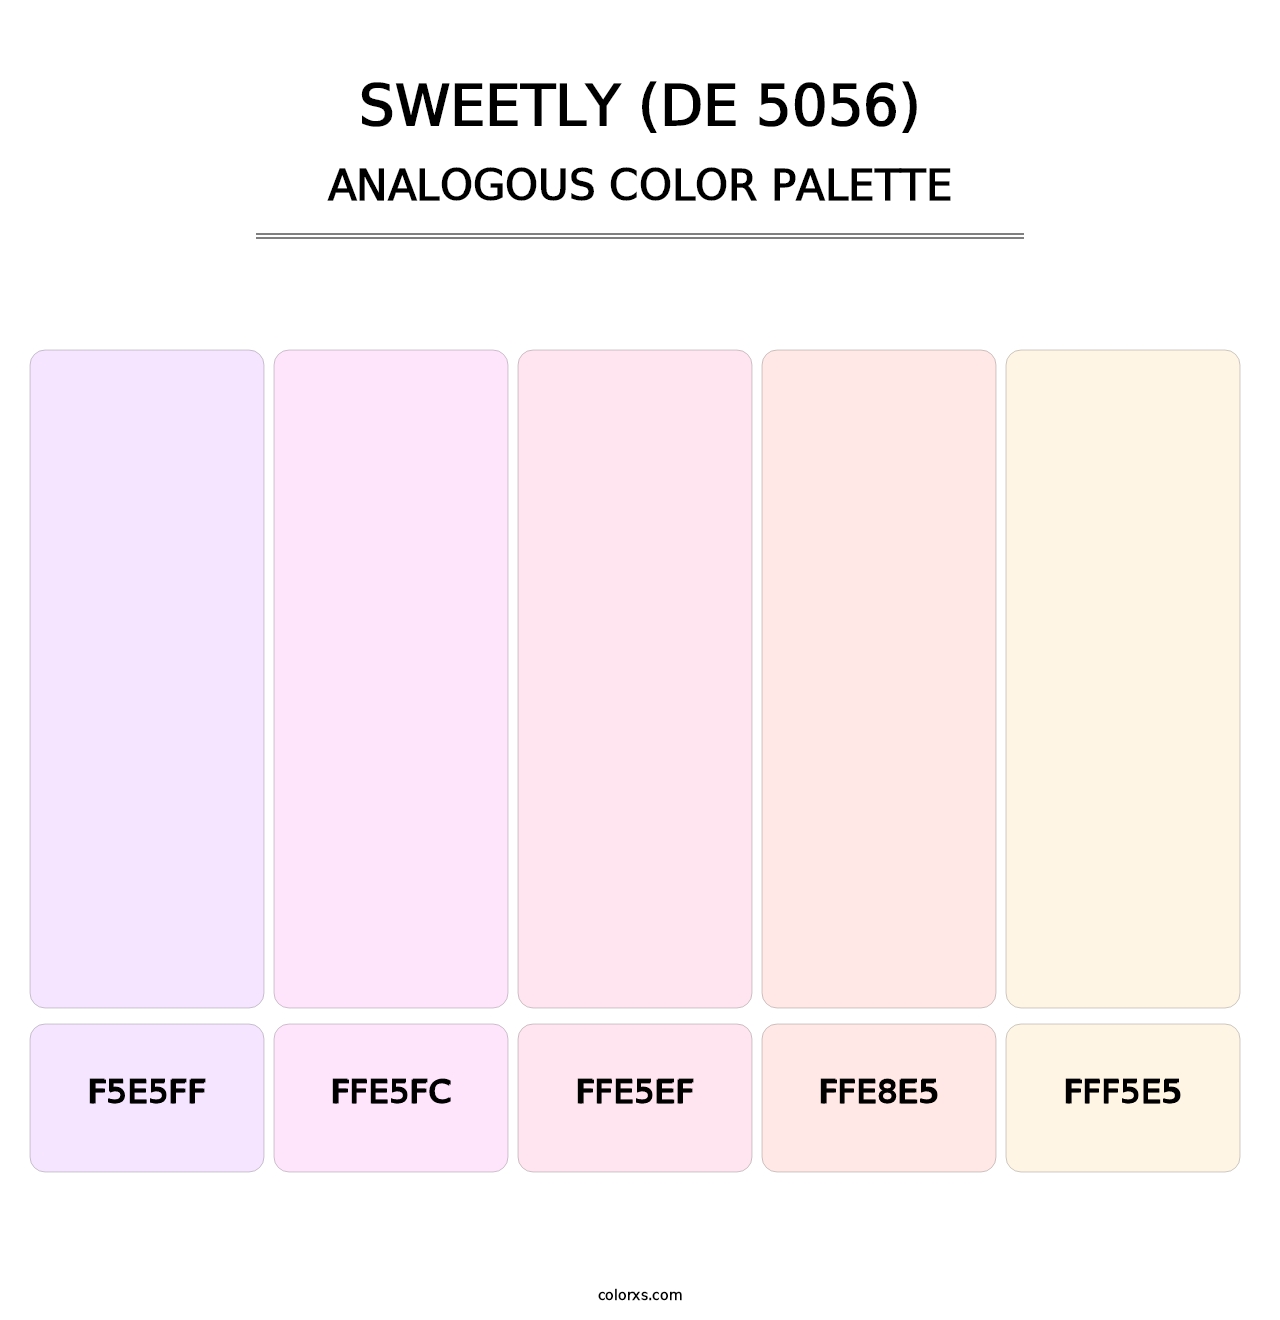 Sweetly (DE 5056) - Analogous Color Palette